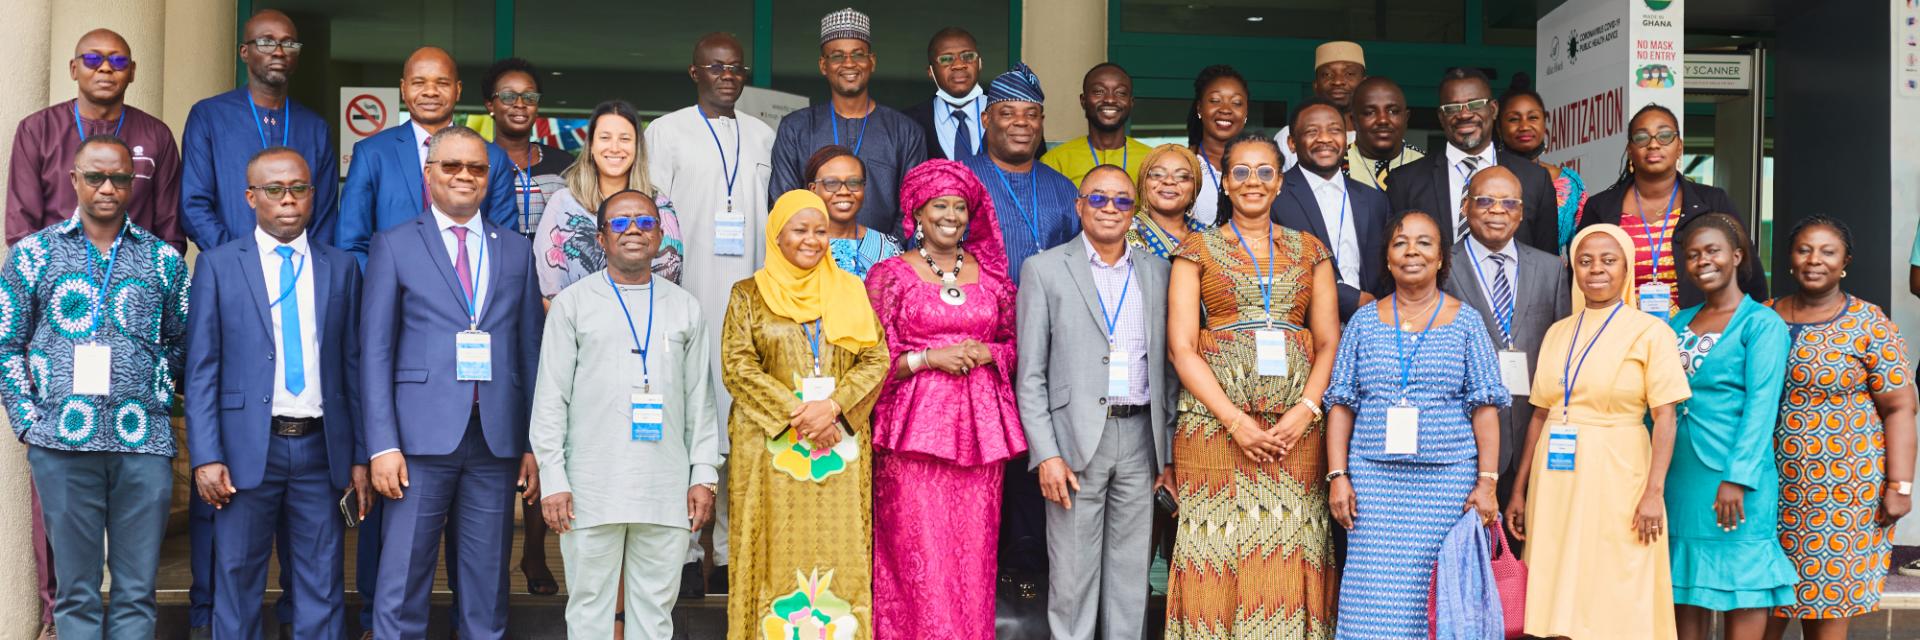 La CEA réunit les décideurs politiques et les chercheurs en vue de la réalisation de la capture du dividende démographique en Afrique de l’Ouest